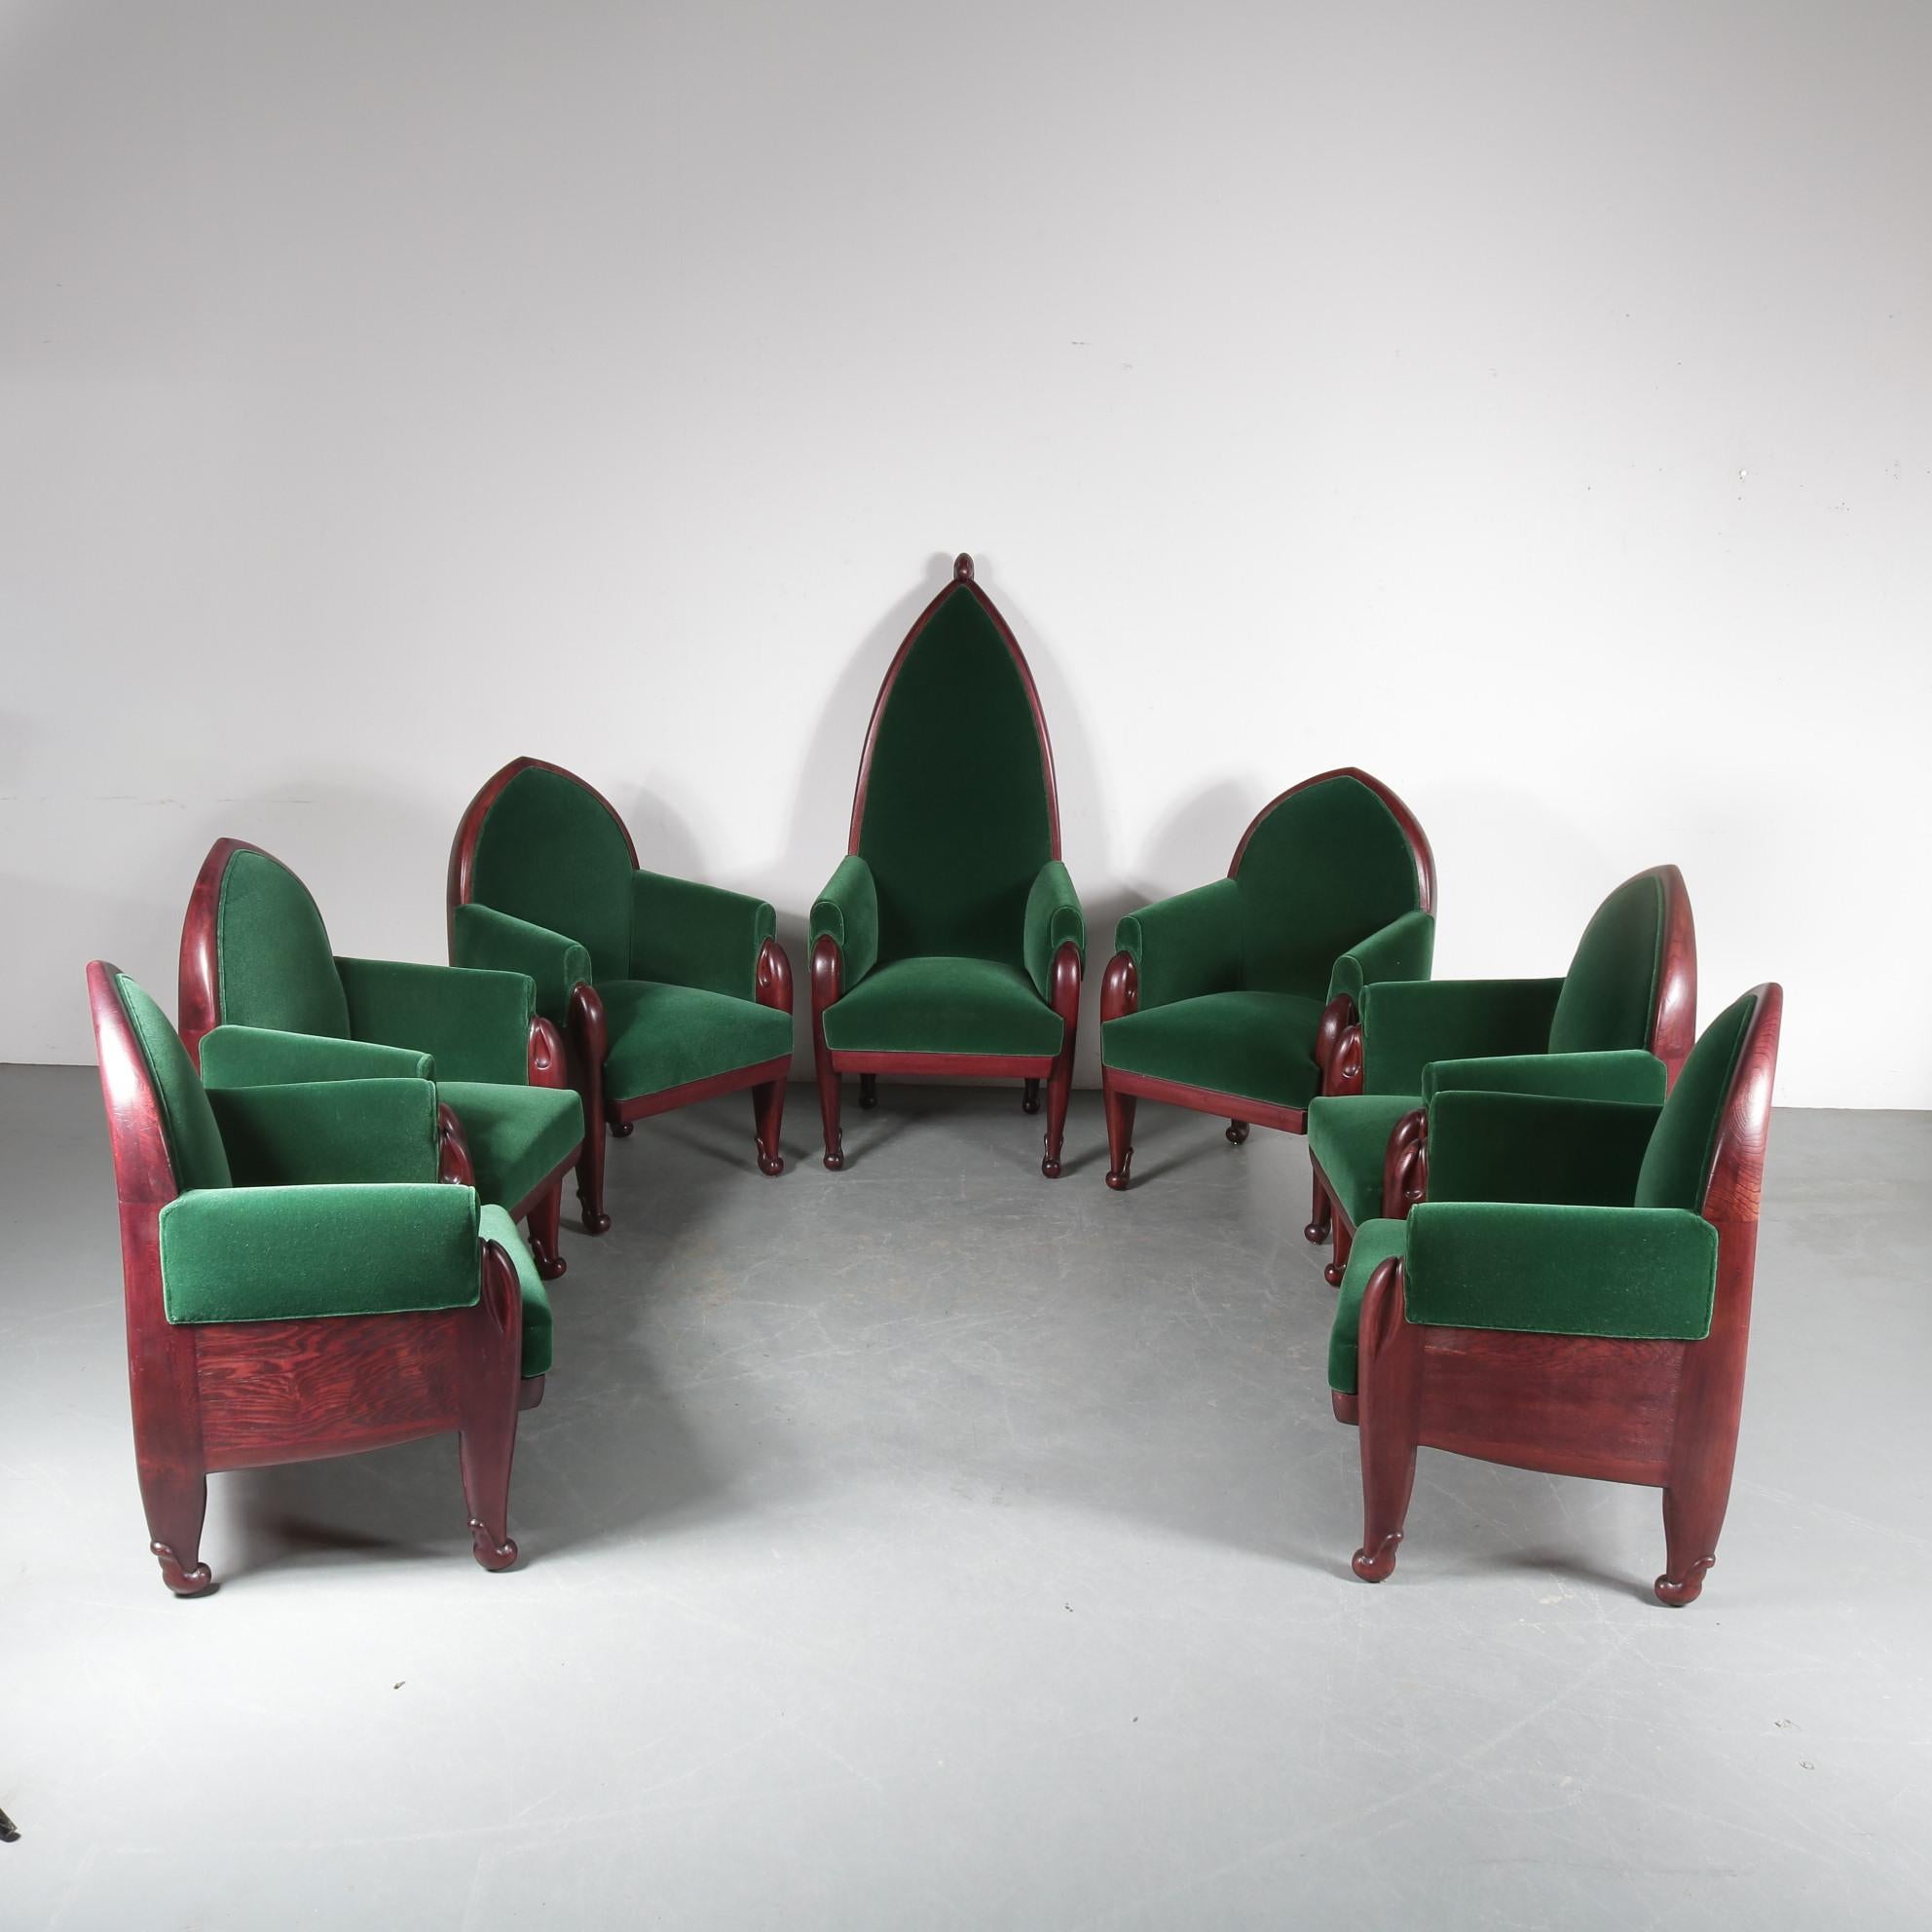 Ein beeindruckendes Set von sieben Konferenzstühlen im Stil der Amsterdamer Schule, entworfen von Cornelis Blaauw für die Kunstgewerbeschule in Haarlem um 1920.

Sie sind aus schönem Qualitätsholz mit einer warmen braunen Oberfläche gefertigt. Die